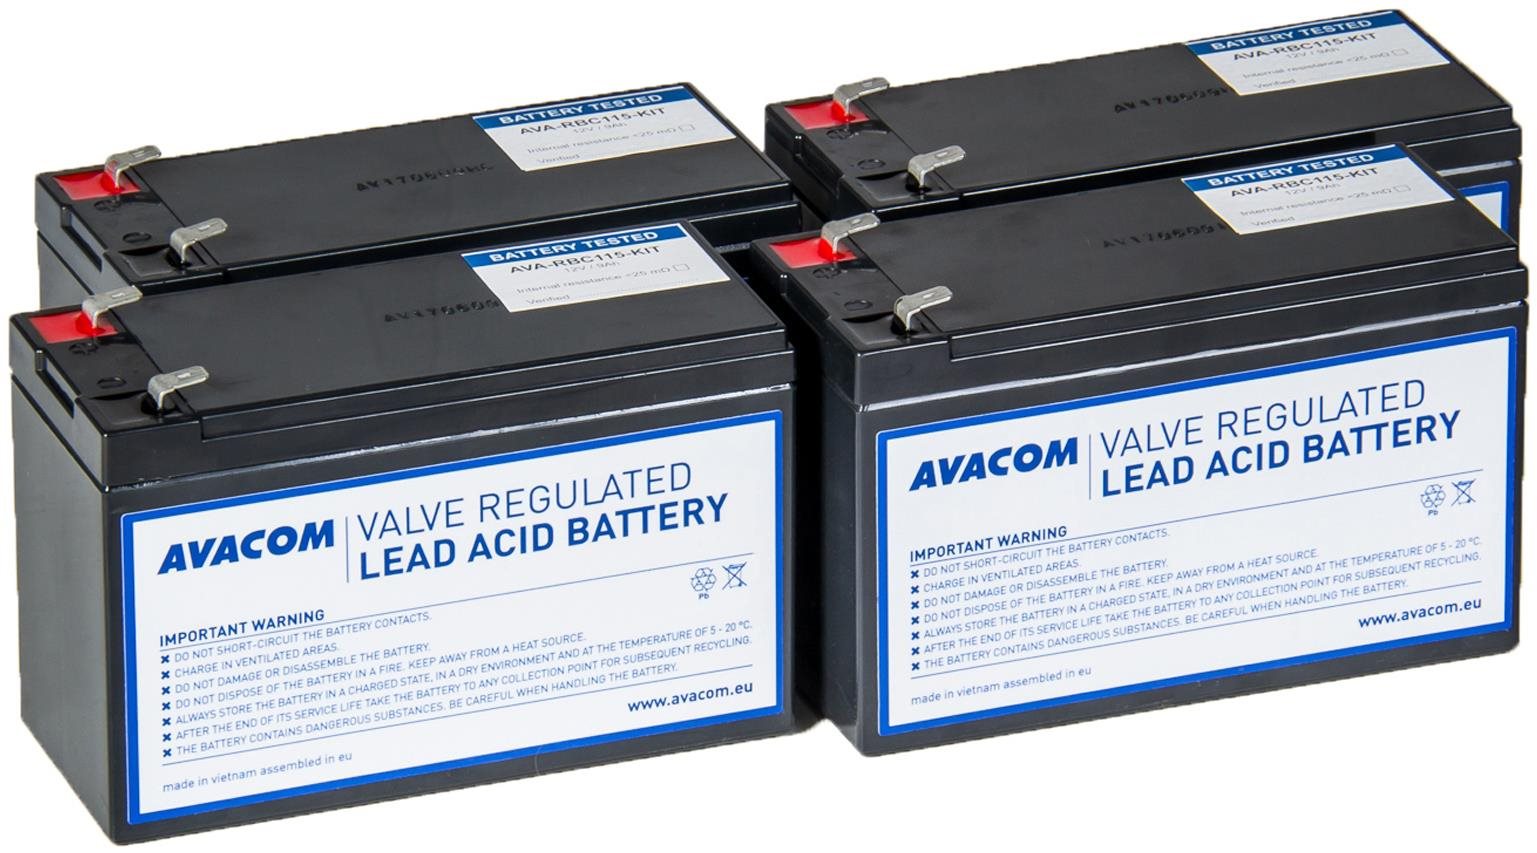 Akkumulátor szünetmentes tápegységhez AVACOM RBC115 - akkumulátor-felújító készlet (4 akkumulátor)